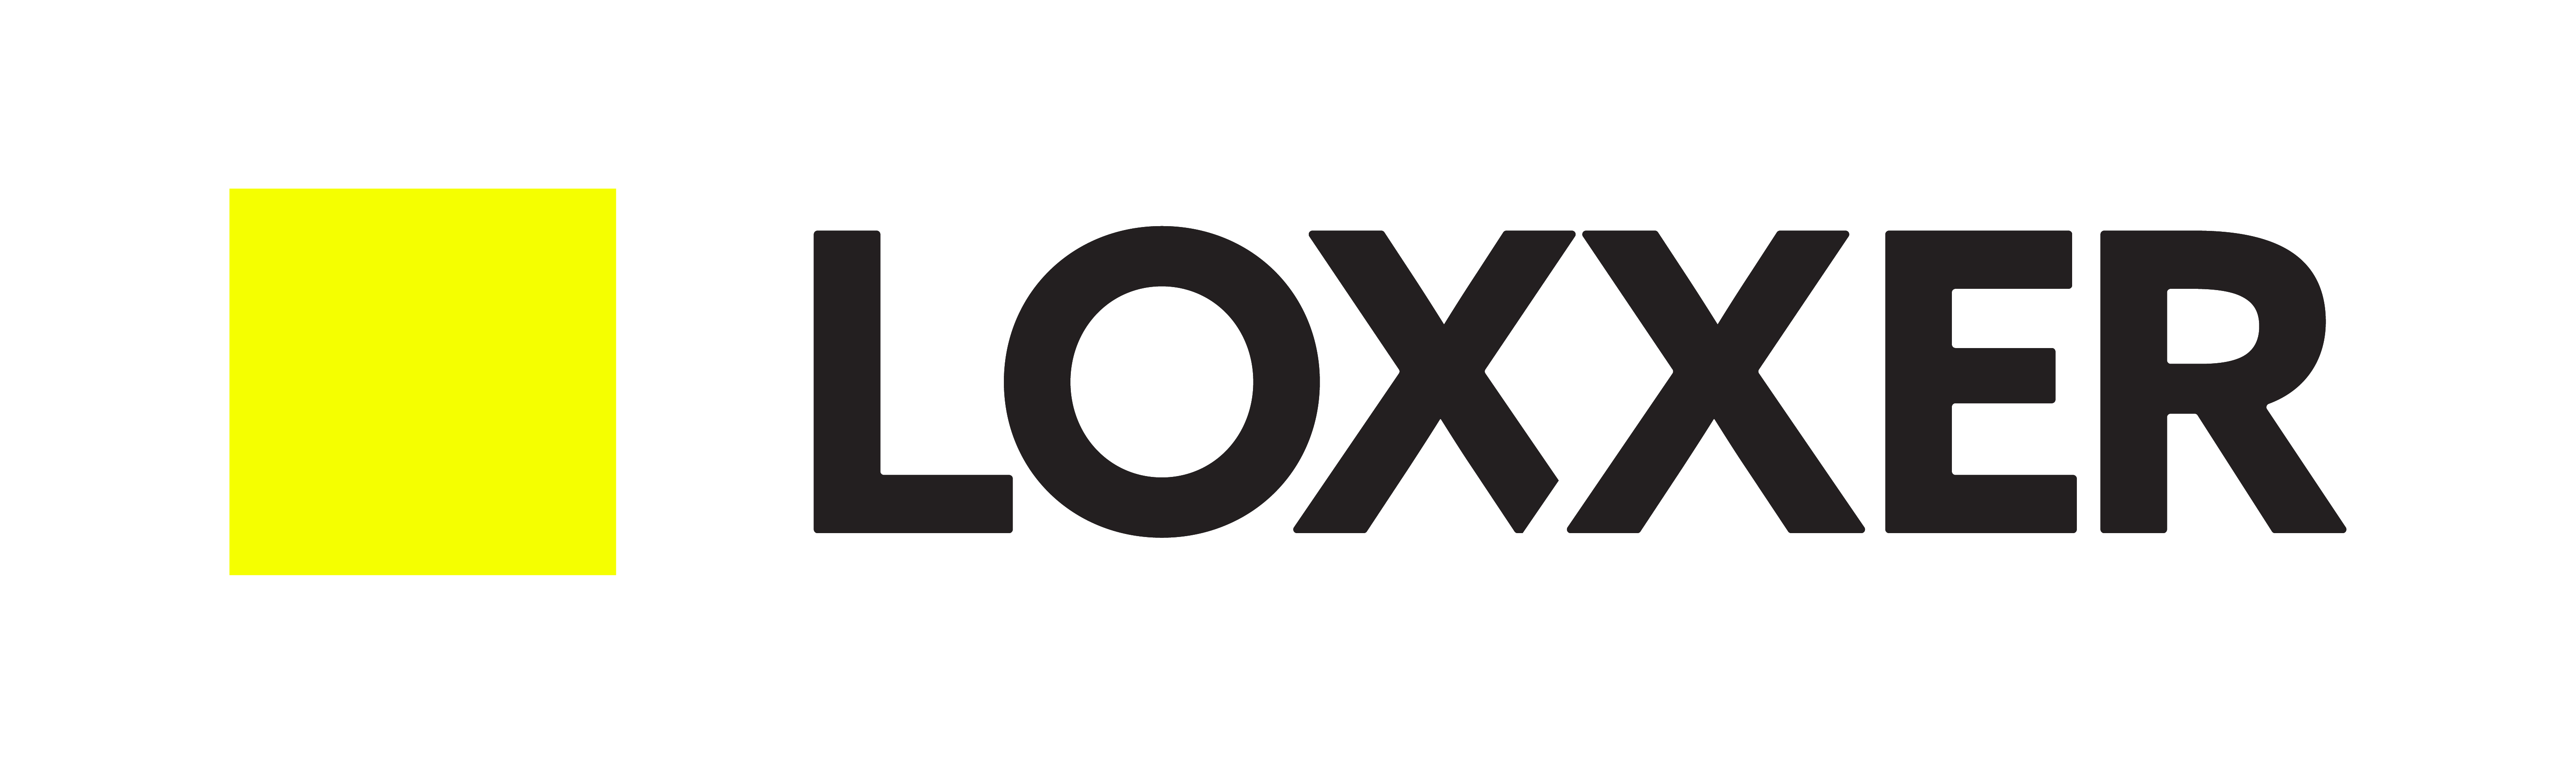 LOXXER